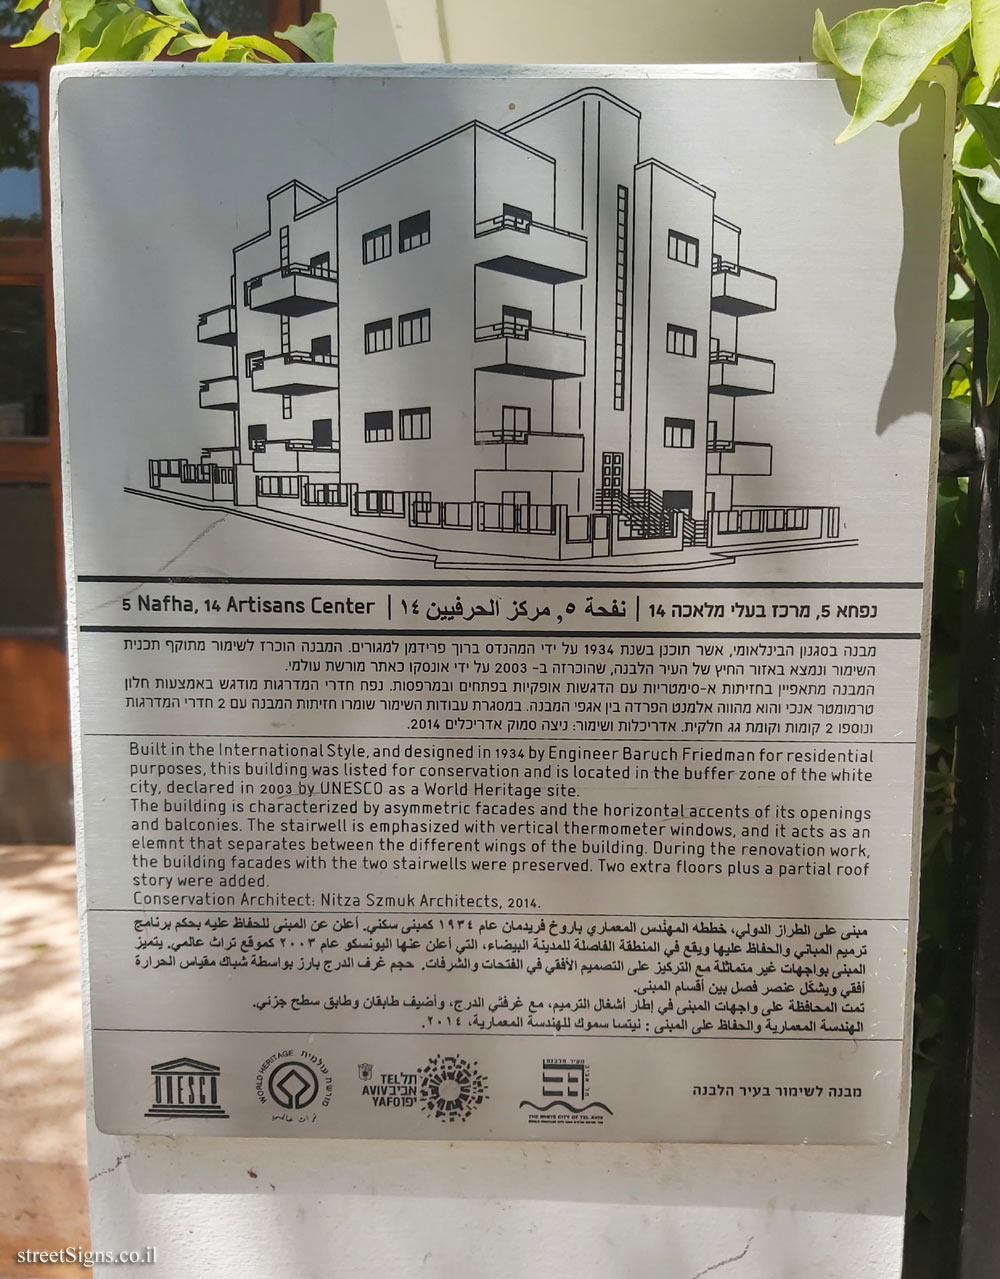 Tel Aviv - buildings for conservation - 5 Nafha, 14 Artisans Center